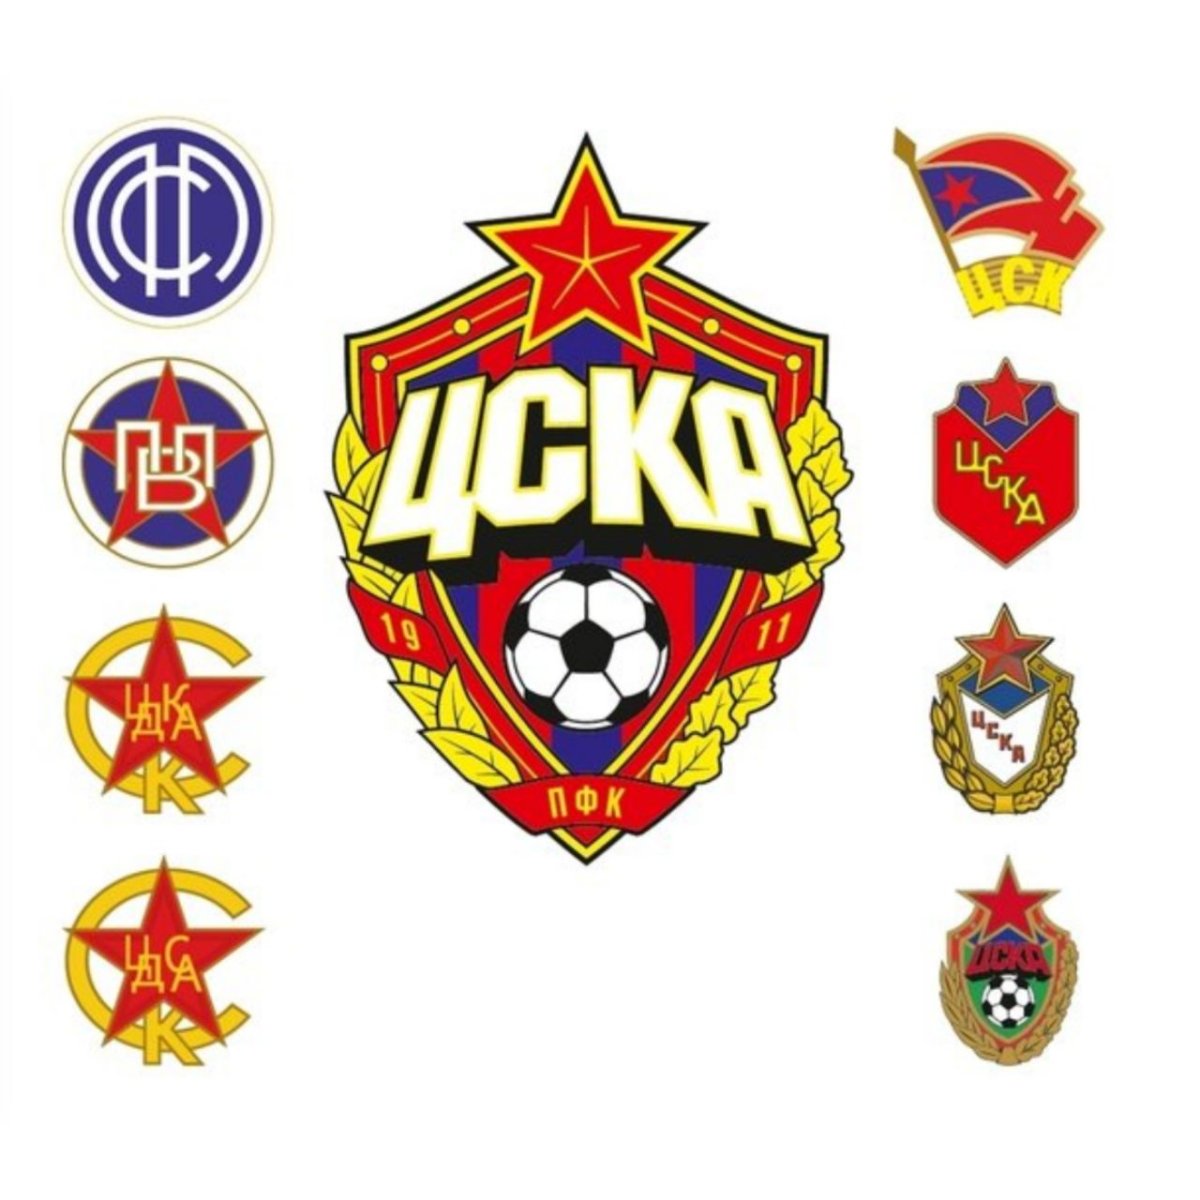 Fun coloring of the CSKA logo